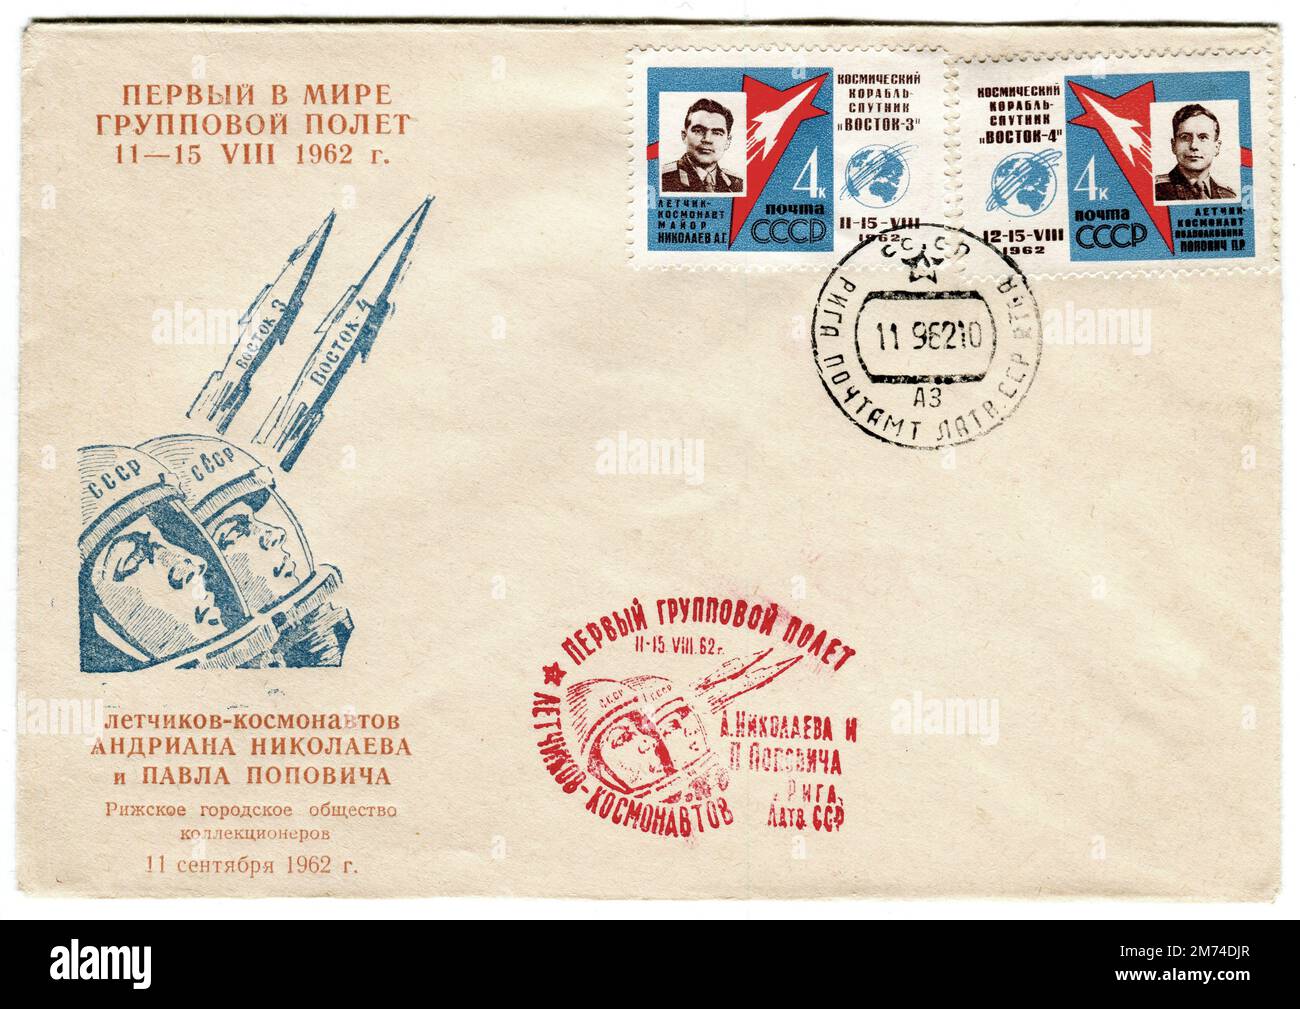 Une couverture spatiale russe soviétique d'époque publiée le 11 septembre 1962 pour commémorer les vols de Vostok 3 et Vostok 4. La couverture est décorée d'une image stylisée des deux roquettes, de leurs pilotes cosmonautes et de la légende traduite qui l'accompagne, "Premier dans le vol du Groupe mondial 11-15 août 1962", et "cosmonautes Andriana Nikolaev et Paul Popovich - collecteurs de la Société de la ville de Riga -11 septembre 1962". Vostok 4 était une mission du programme spatial soviétique lancée en août 1962, un jour après Vostok 3; la première fois que plus d'un vaisseau spatial à équipage était en orbite en même temps. Banque D'Images